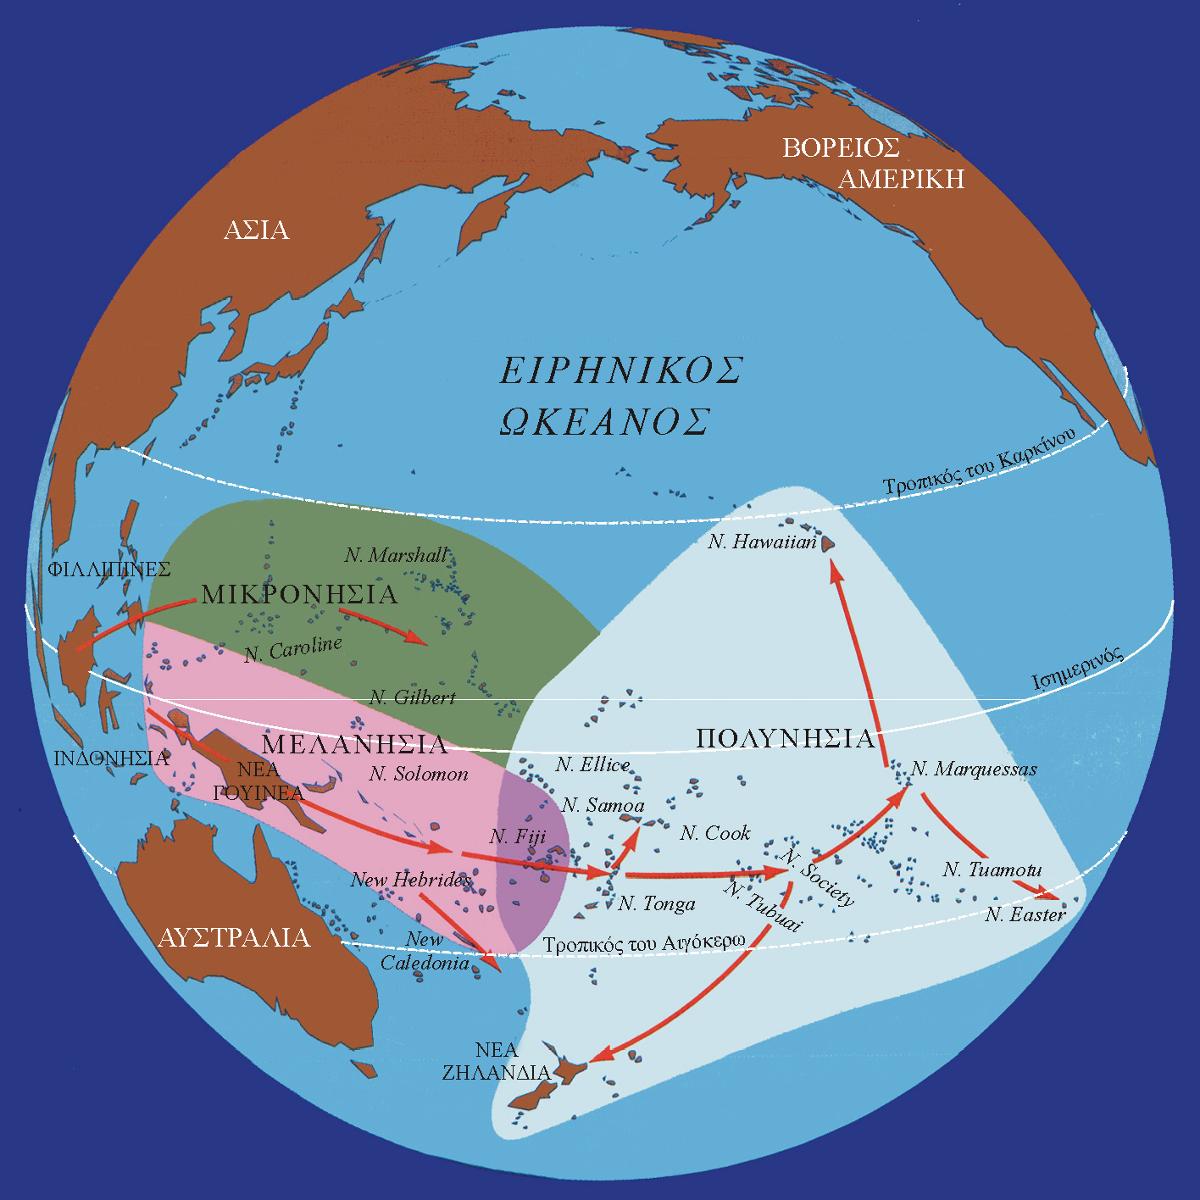 ΜΕΤΑΦΟΡΕΣ - ΕΜΠΟΡΙΟ Ο εποικισμός της Ινδονησίας και Νέας Γουϊνέας έλαβε χώρα περίπου πριν 35000 χρόνια από μεταναστεύσεις πληθυσμών της Ν.